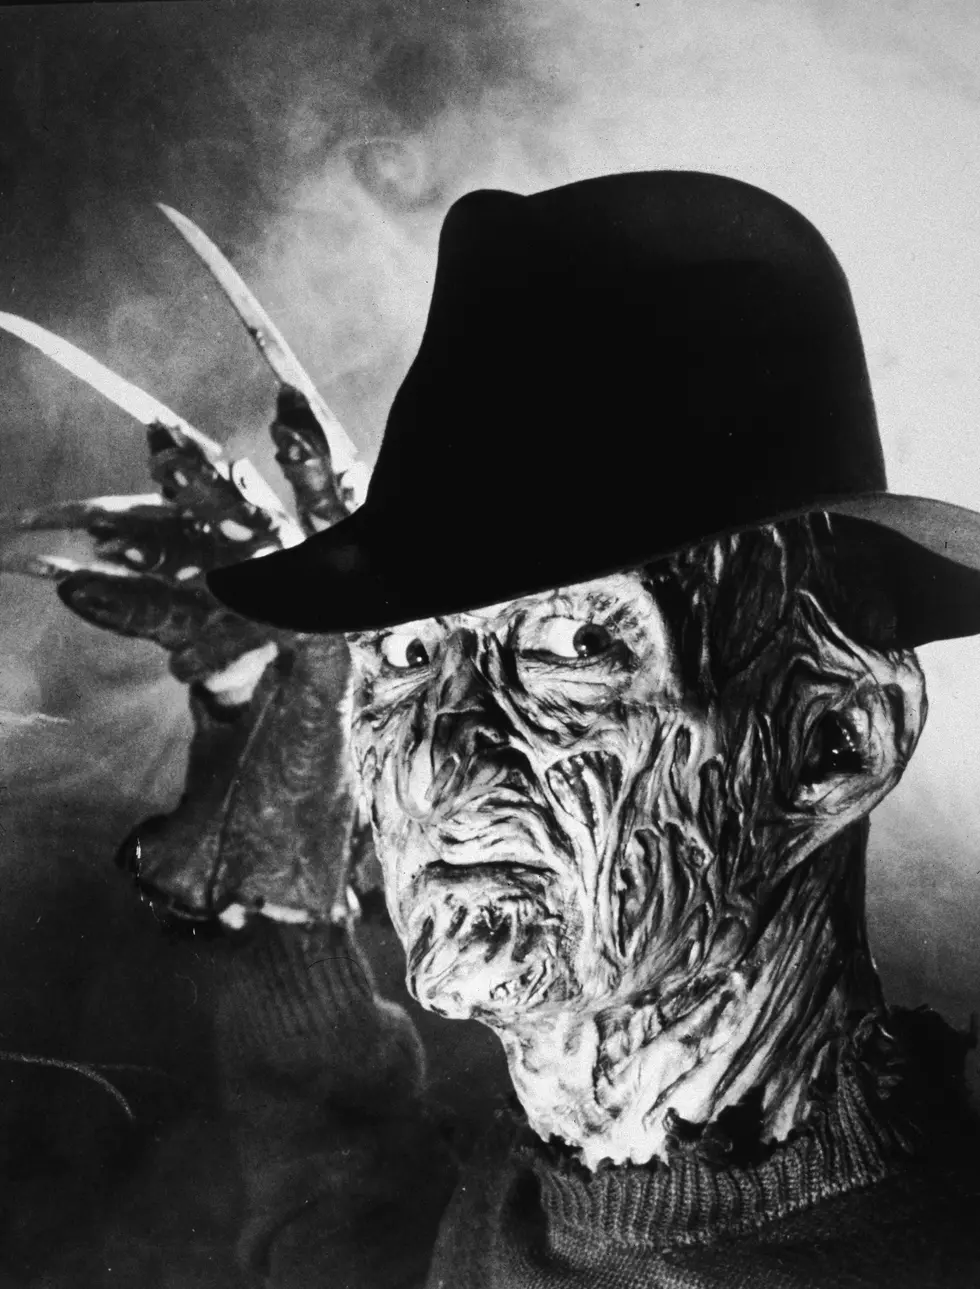 Better Movie Monster - Freddy Krueger or Alien?